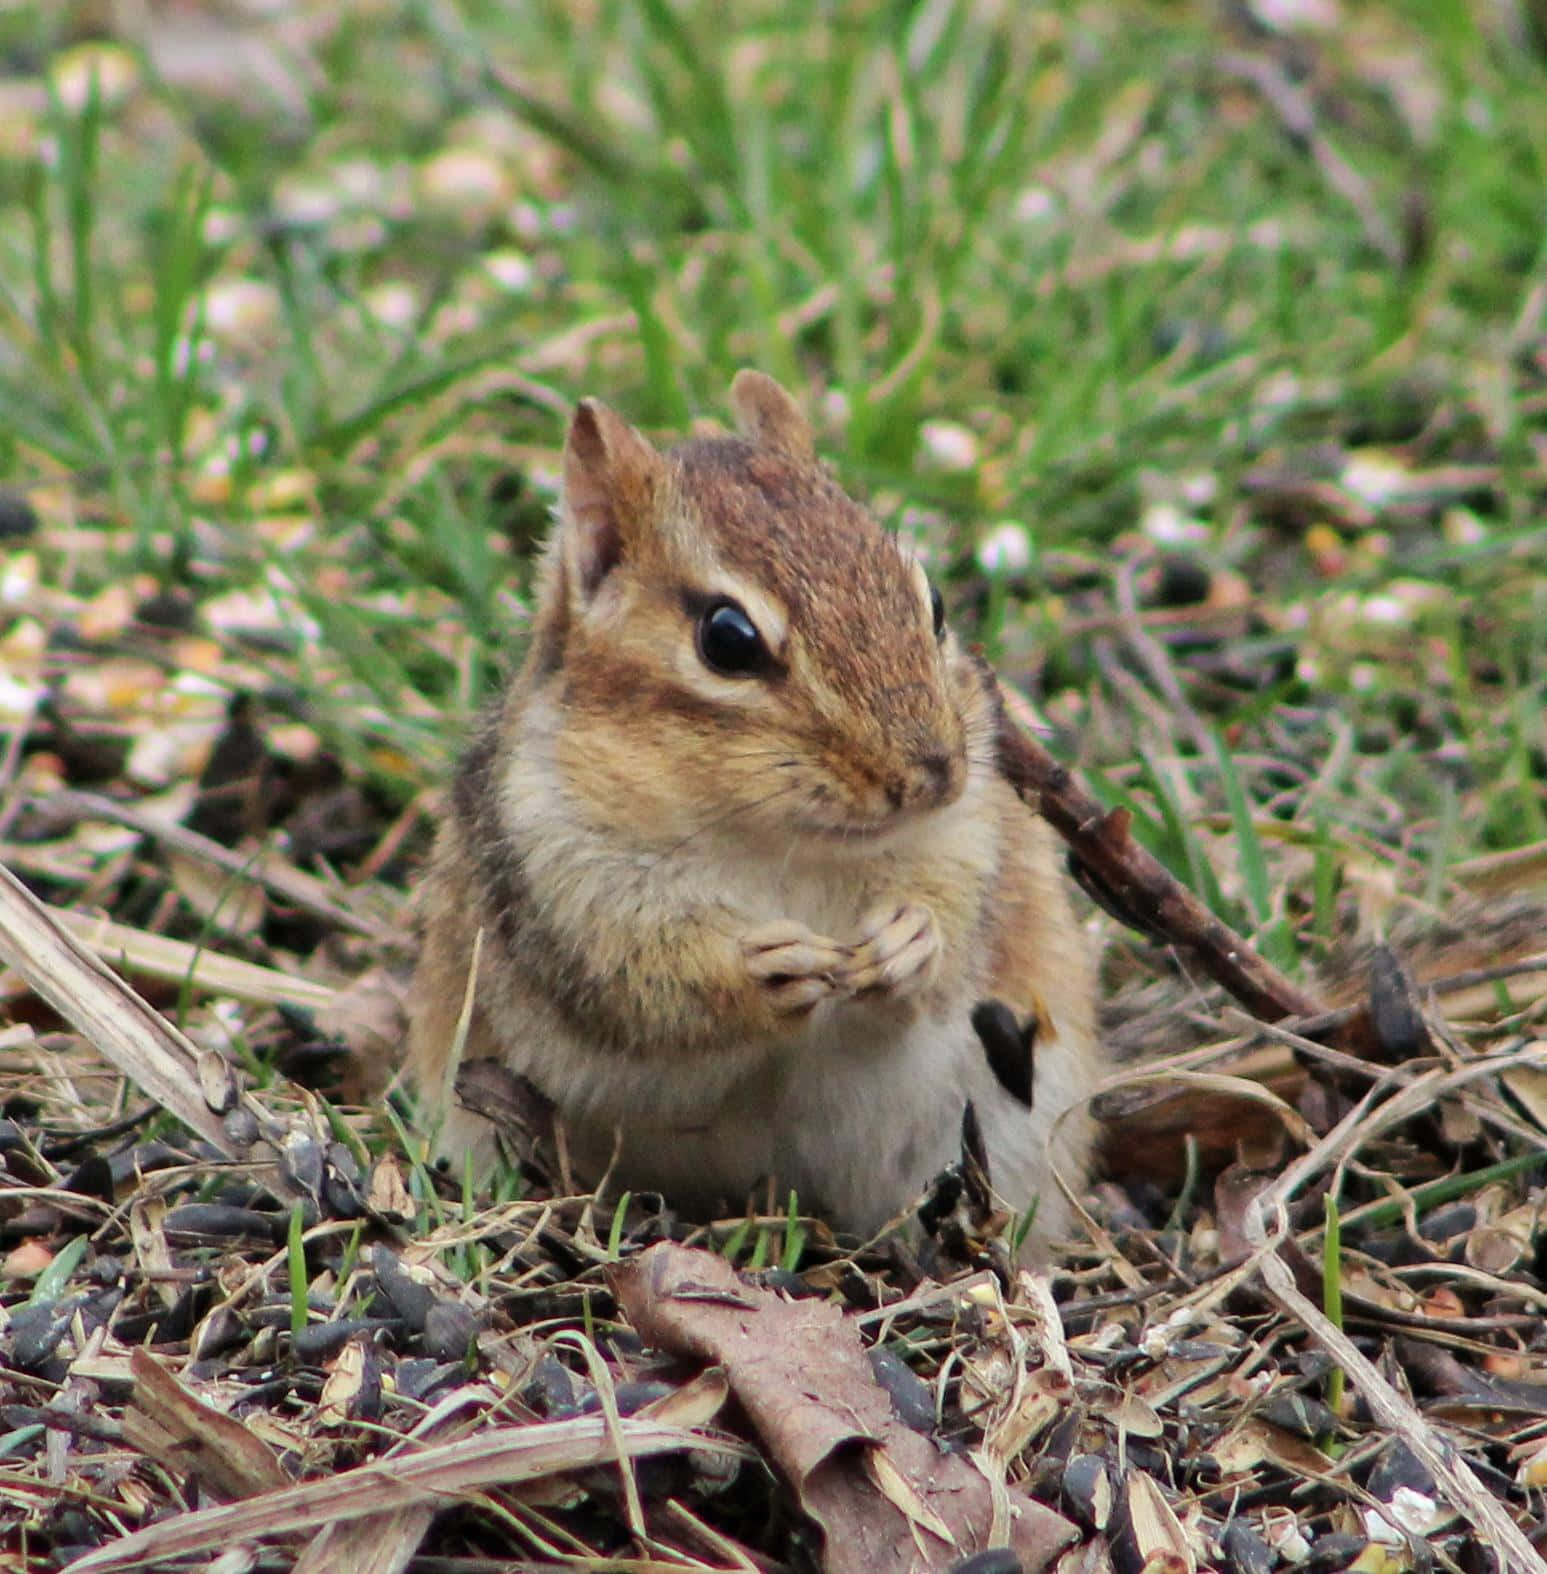 Bildvon Einem Eichhörnchen Auf Getrockneten Blättern Und Gras.